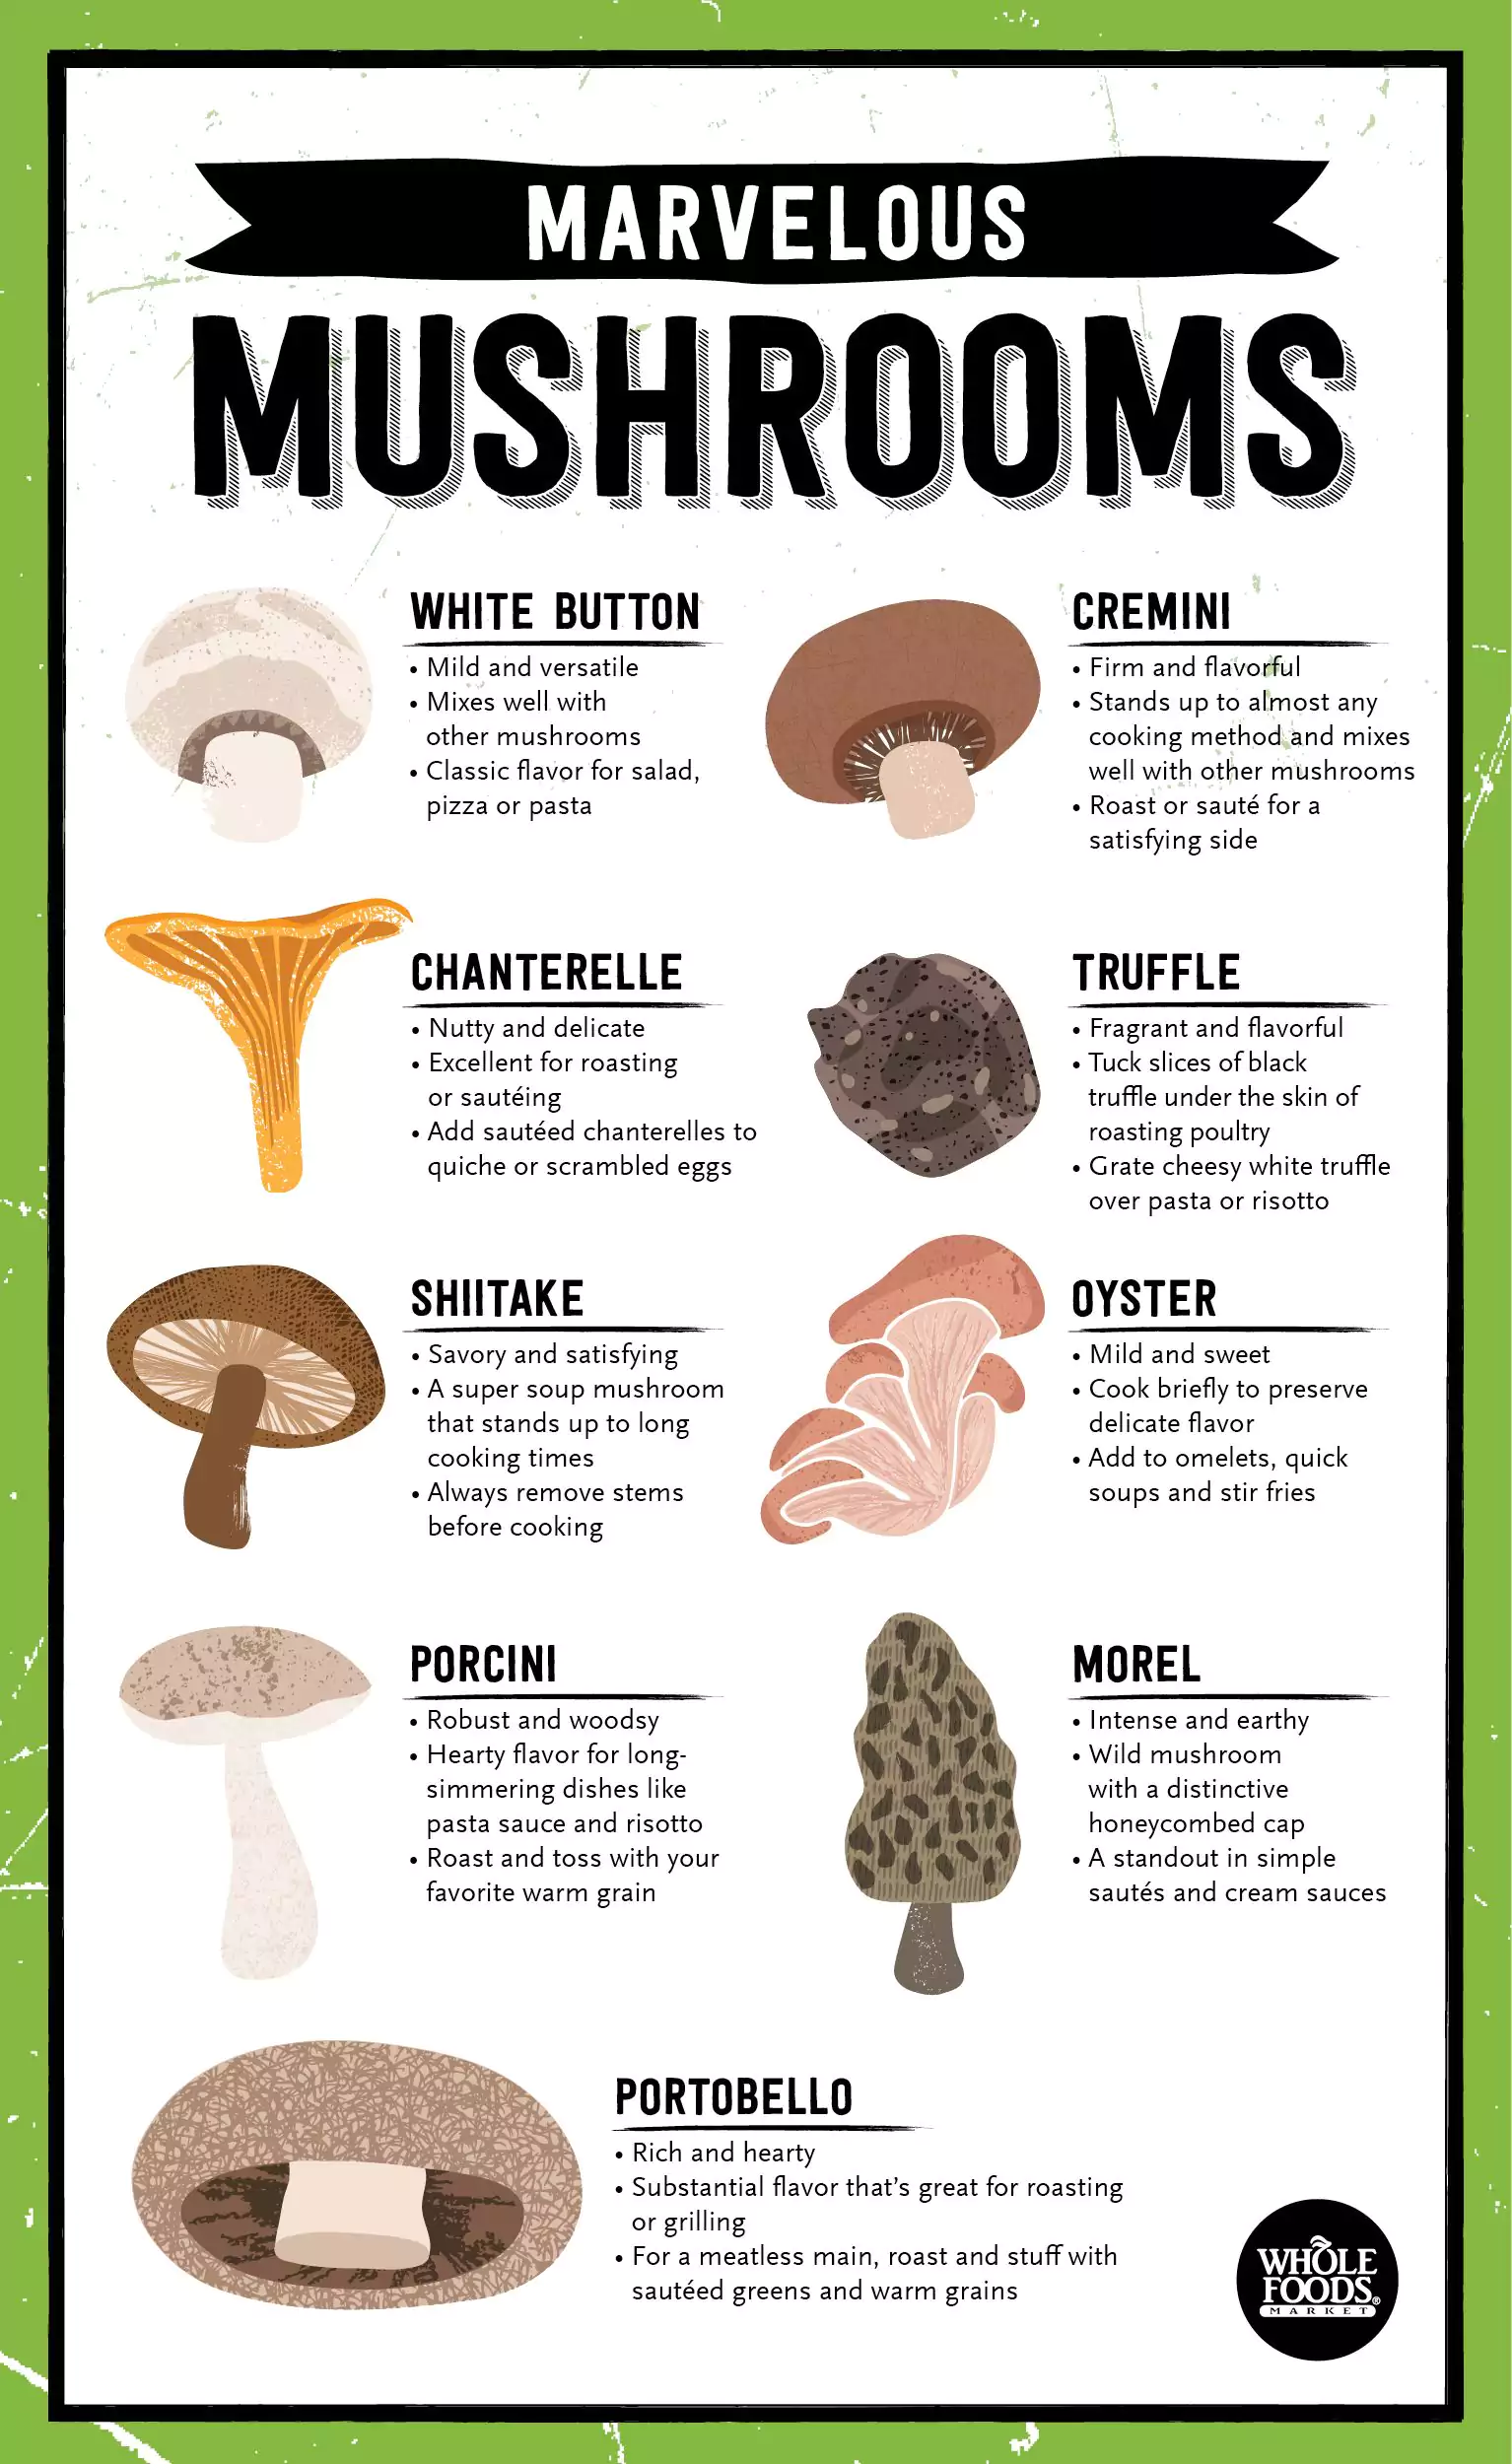 Mushrooms Are Marvelous